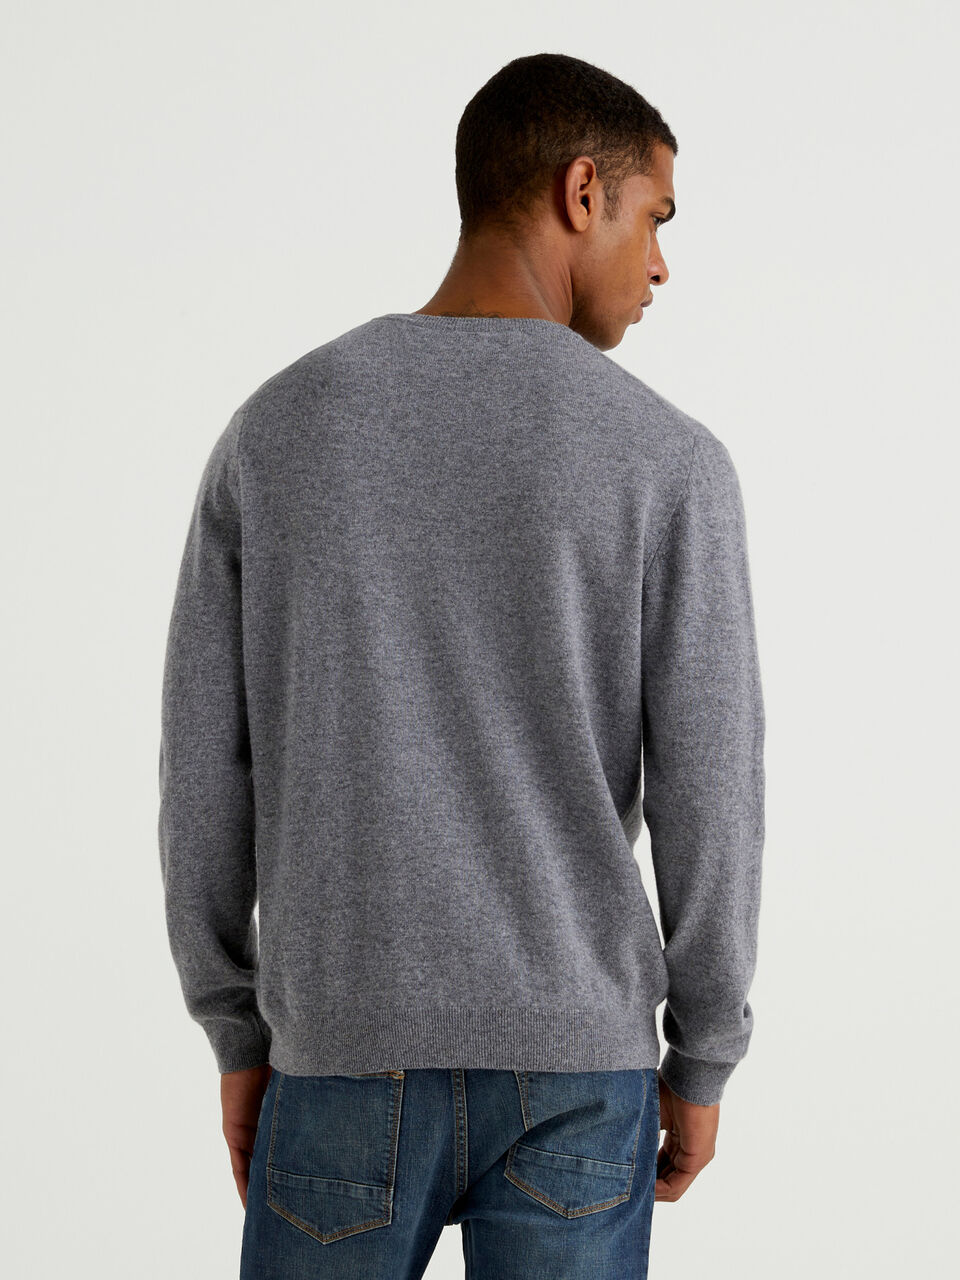 Dark gray crew neck sweater in pure Merino wool